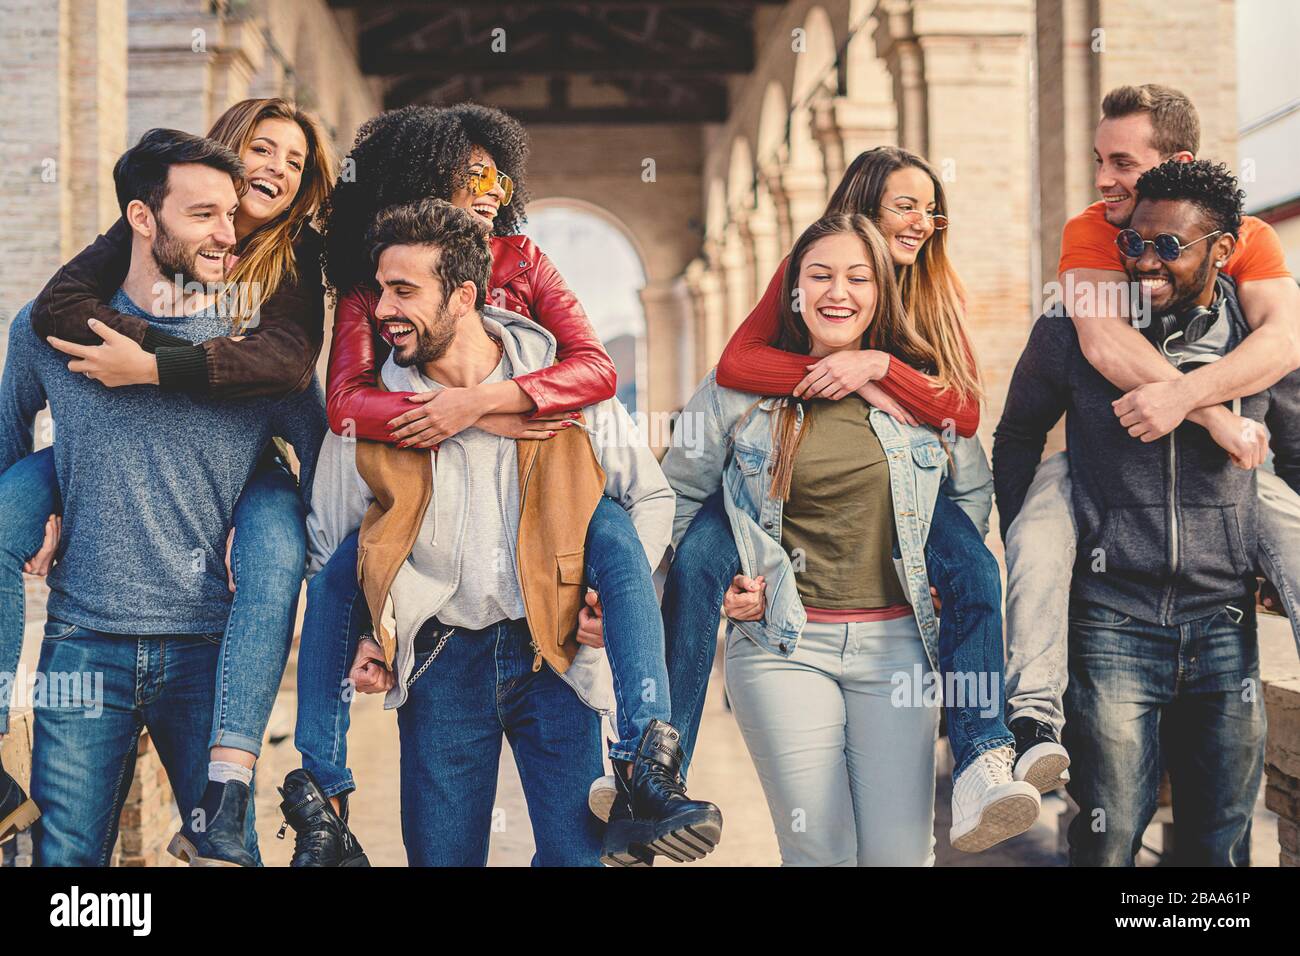 Freundeskreis hat Spaß unter den Arkaden des historischen Zentrums - Jugendliche hängen bereit für Partynacht - Freundschafts- und Jugendkonzept Stockfoto